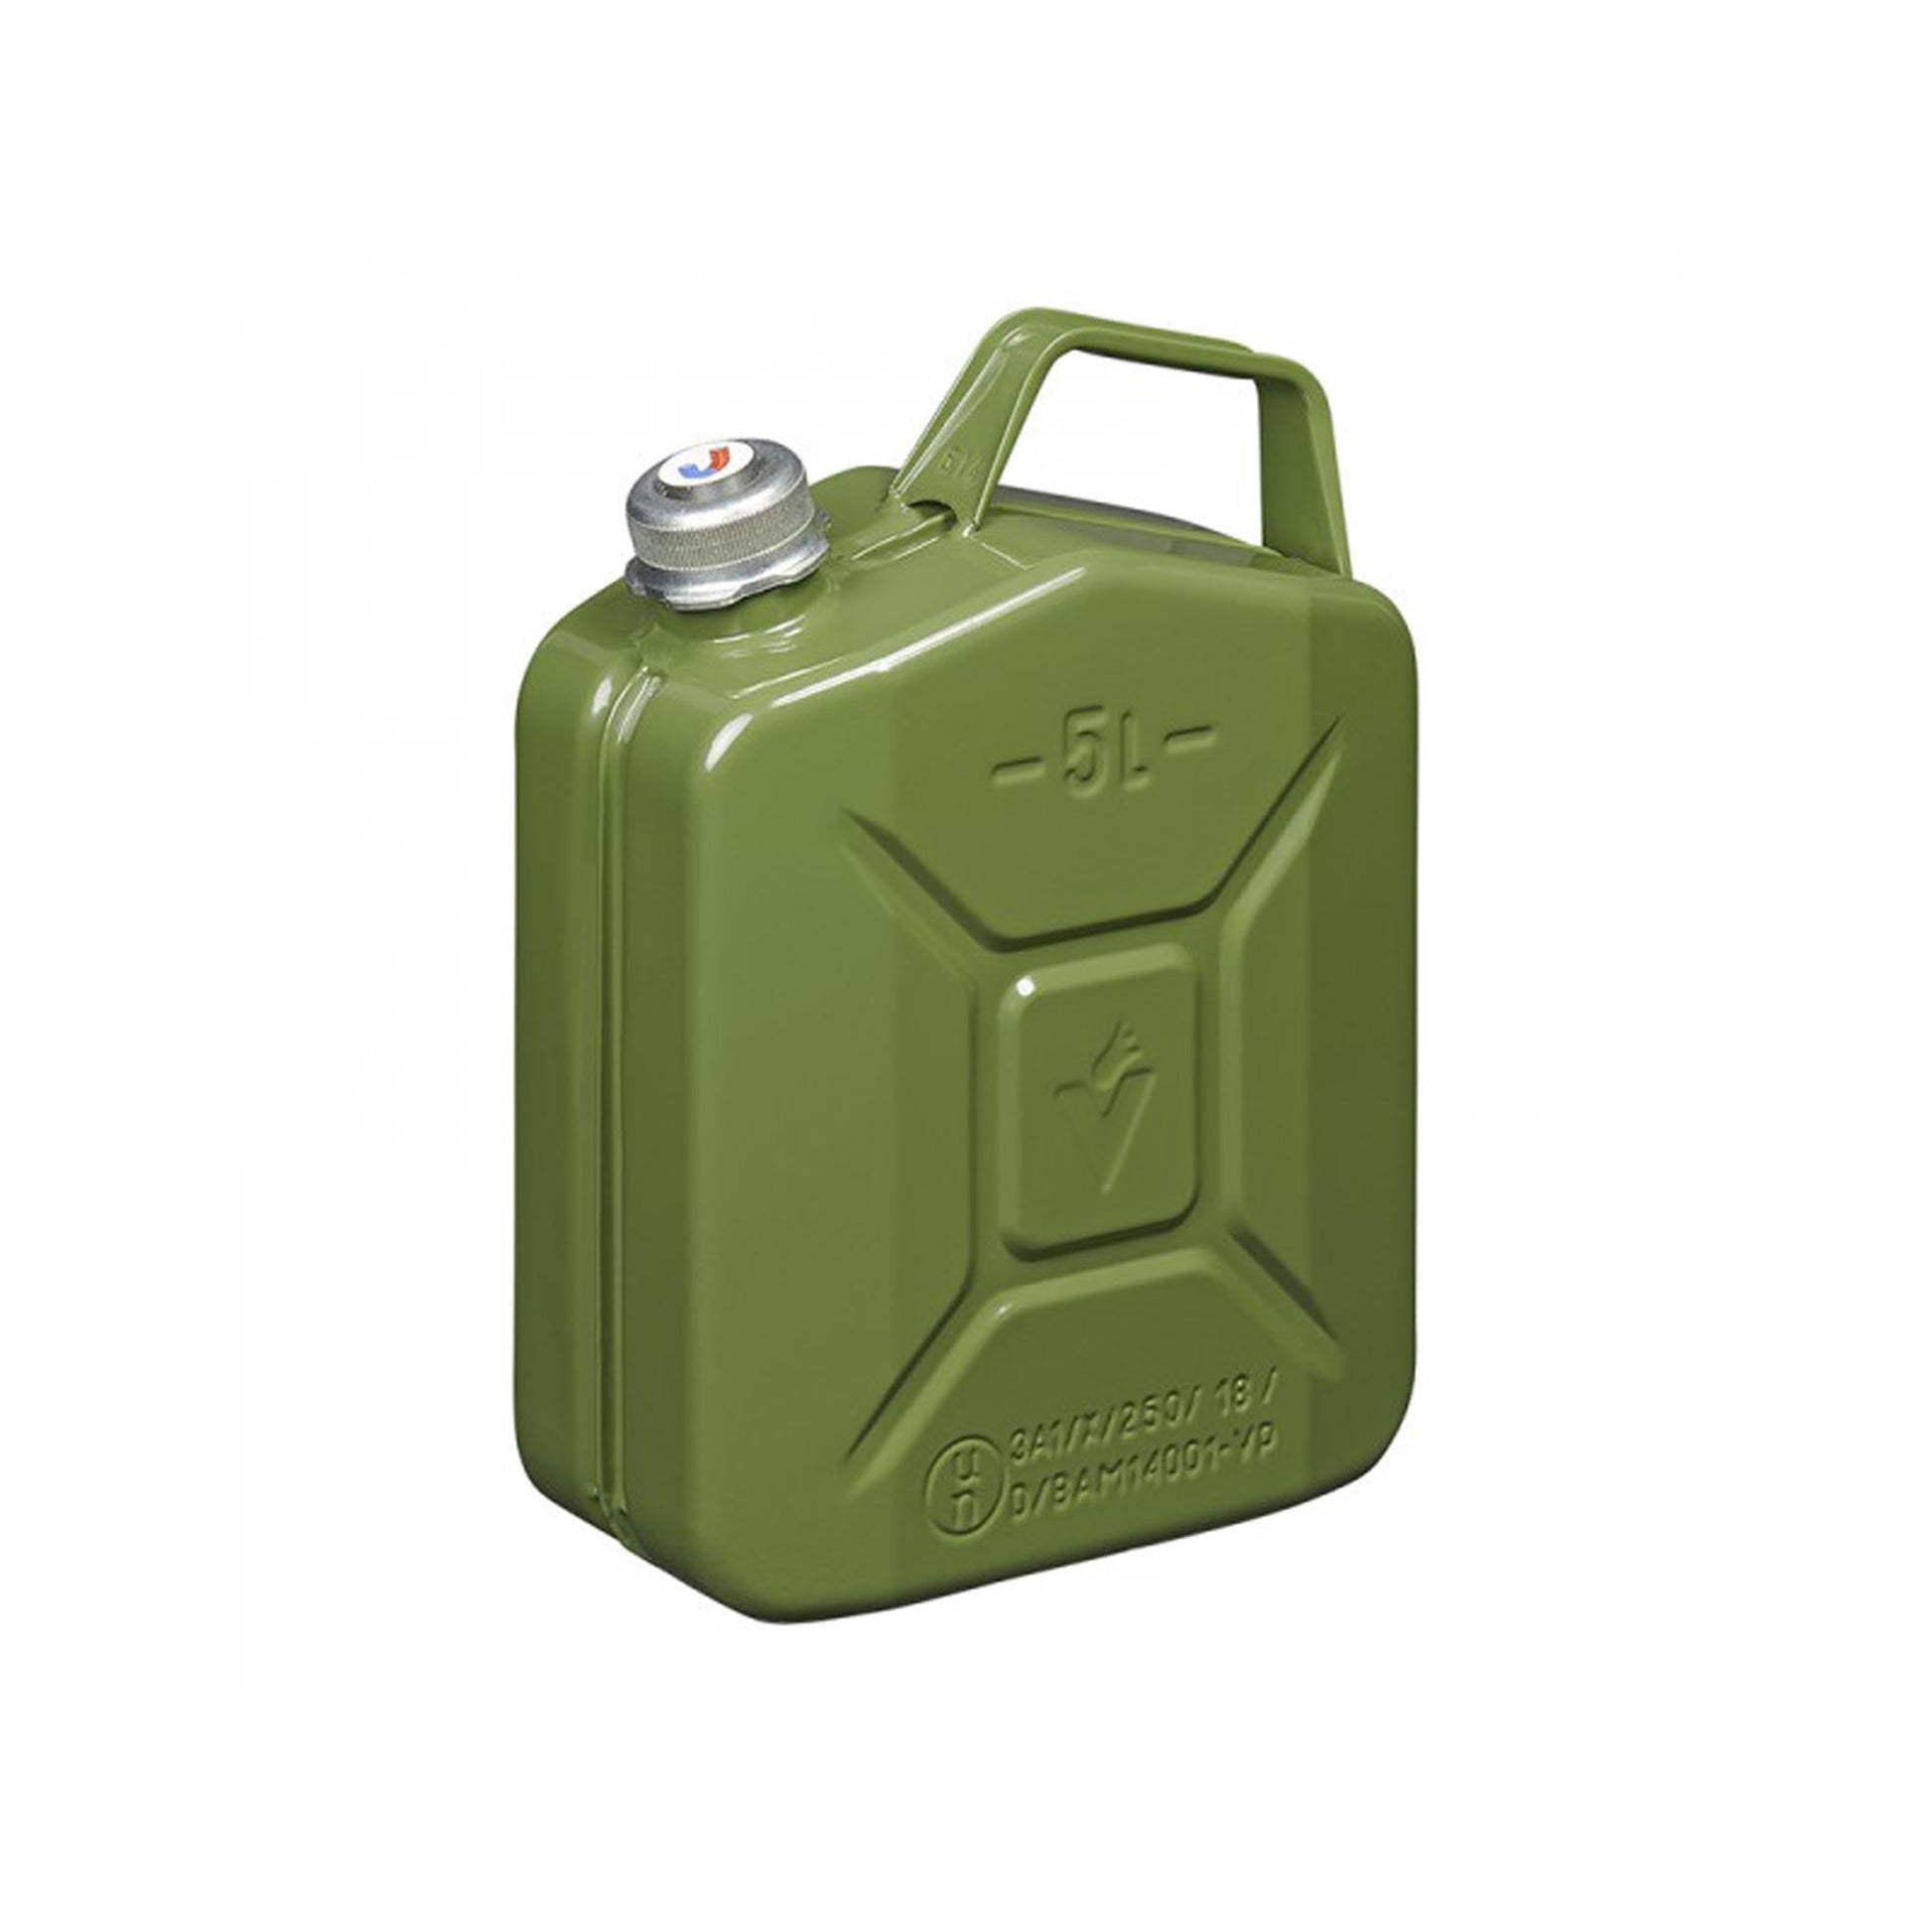 Benzinkanister 5L metall grün mit magnetischem Schraubverschluss